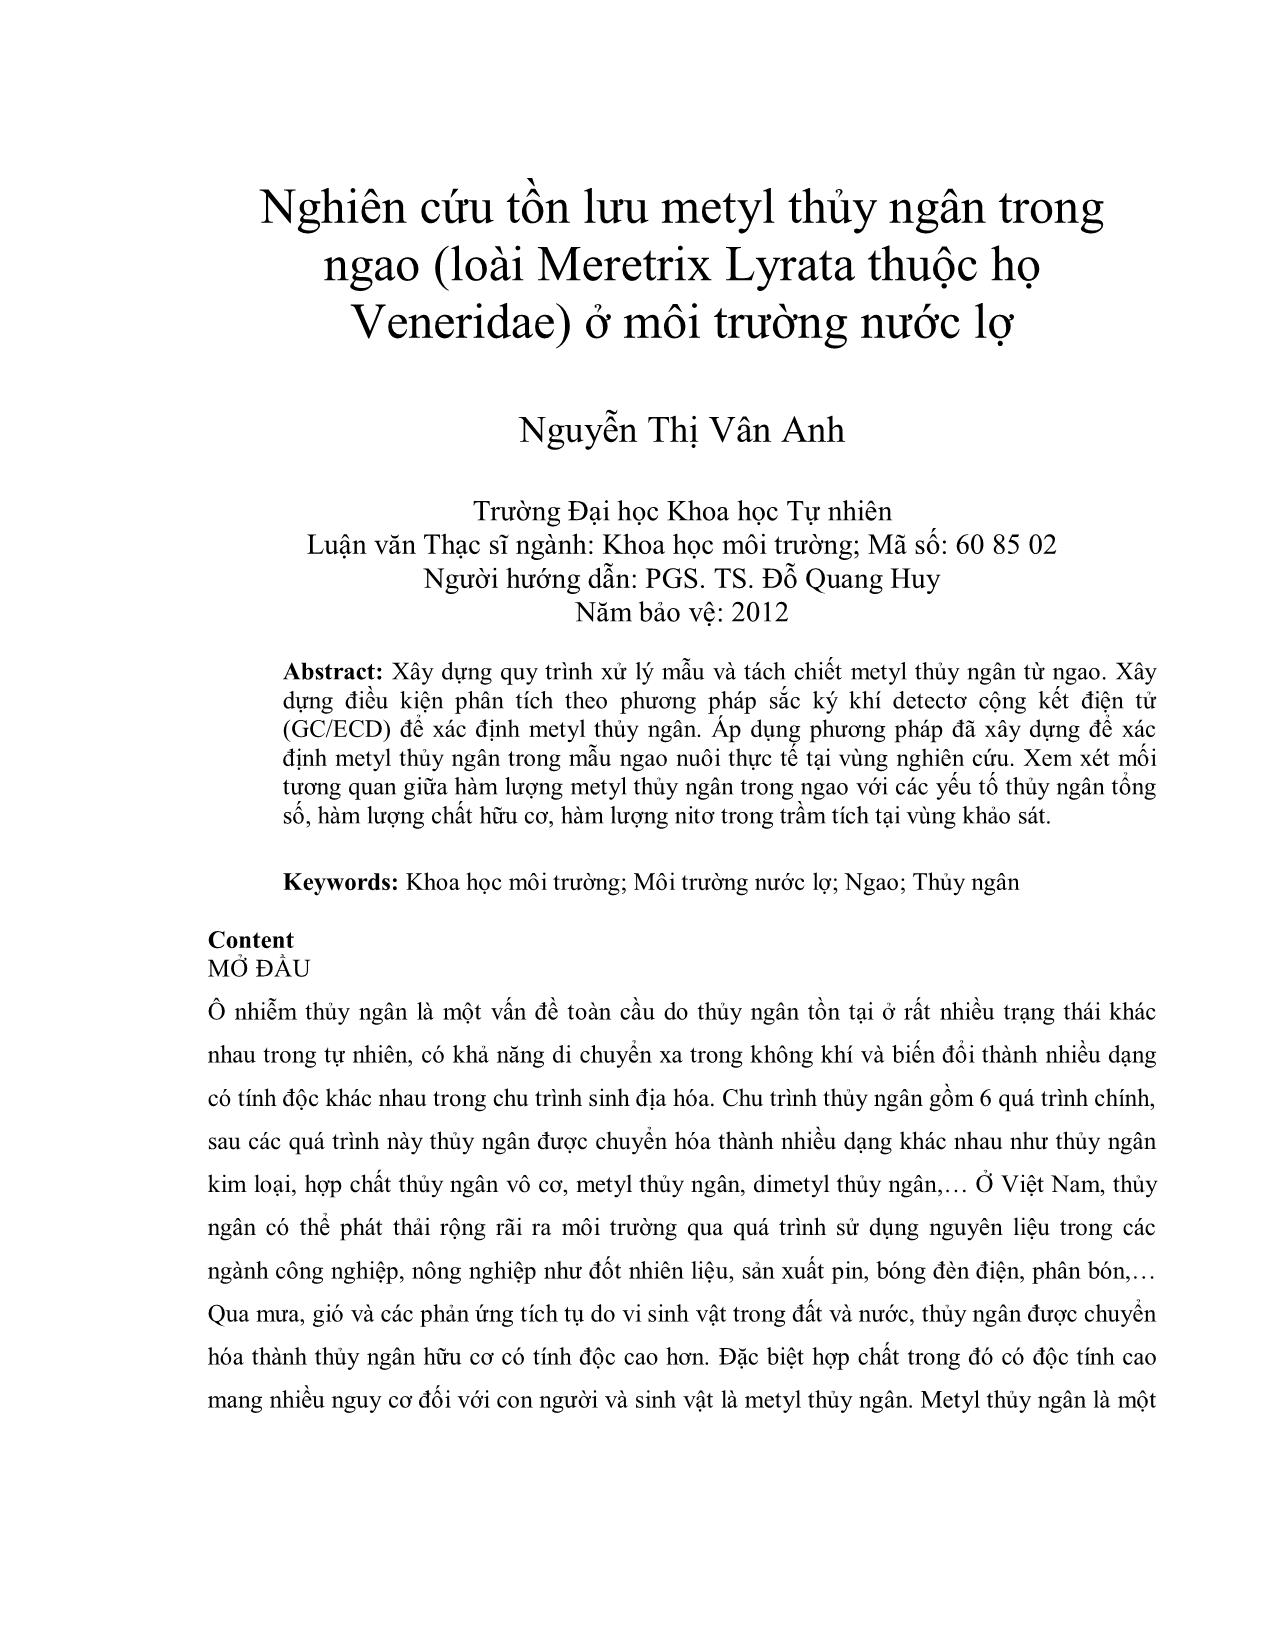 Nghiên cứu tồn lưu metyl thủy ngân trong ngao (loài Meretrix Lyrata thuộc họ Veneridae) ở môi trường nước lợ trang 1